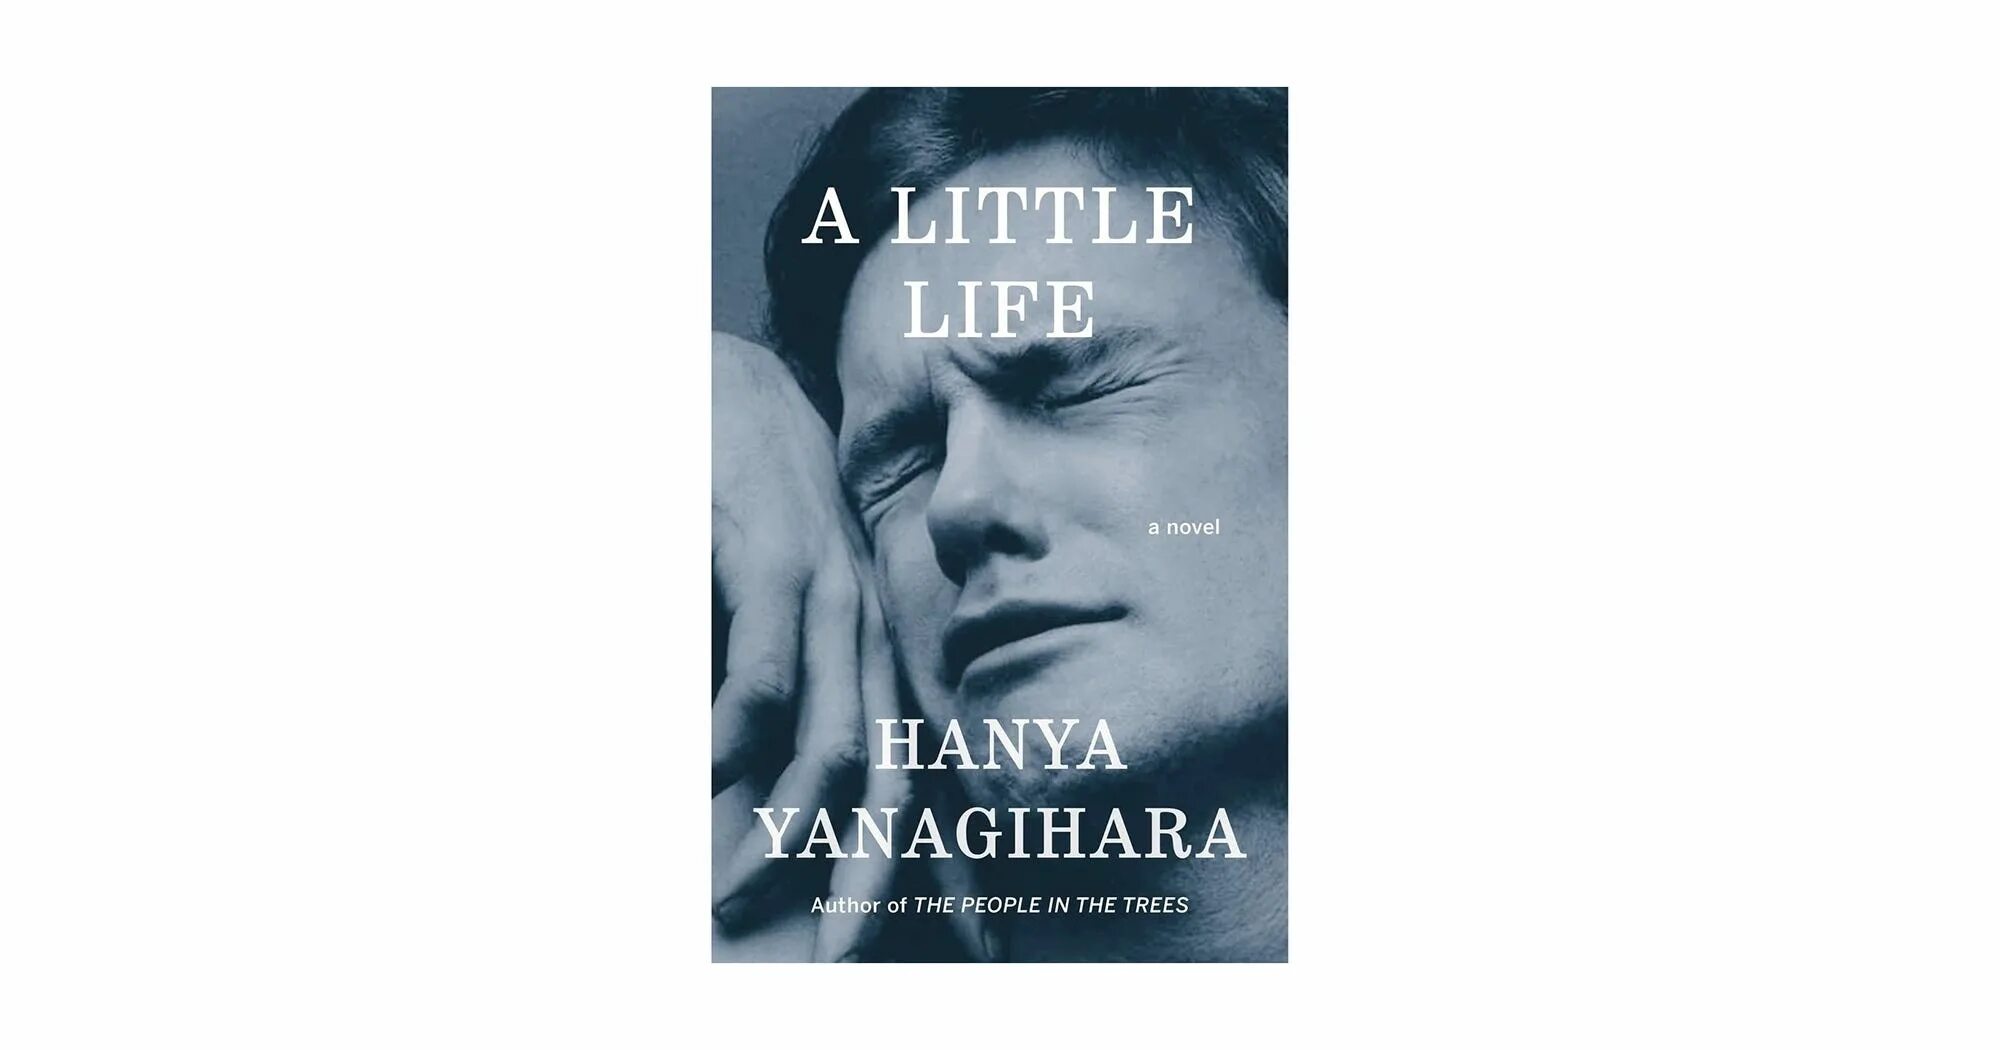 Little life book. A little Life книга. A little Life hanya Yanagihara. The little Life hanya Yanagihara обложка. Обложка книги a little Life.